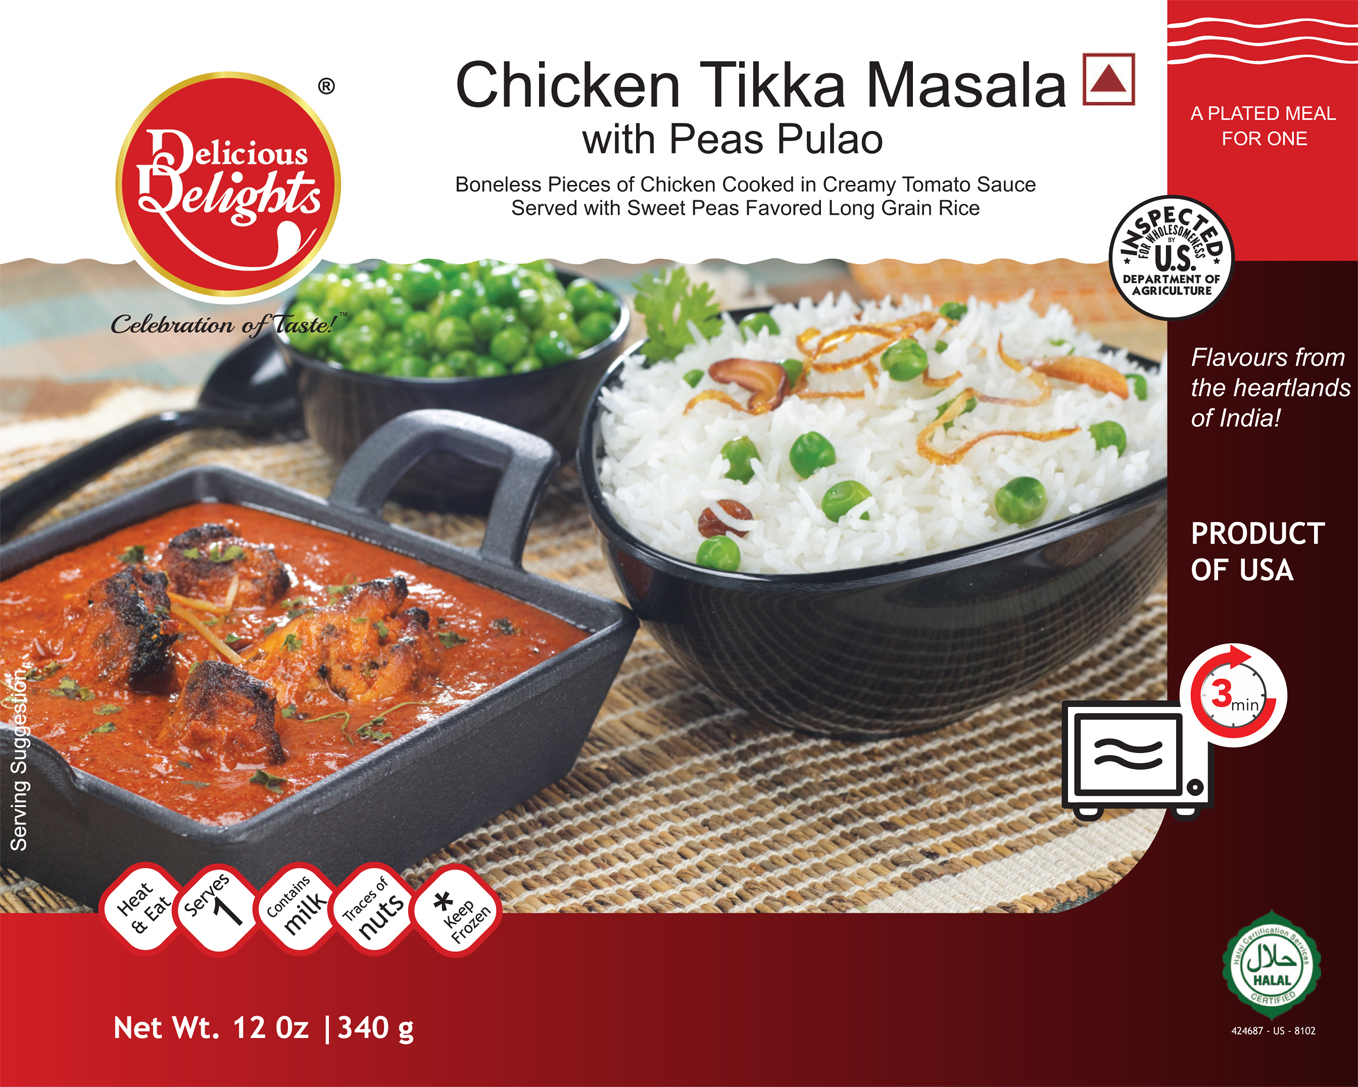 Delicious Delights Chicken Tikka Masala with Peas Pulao